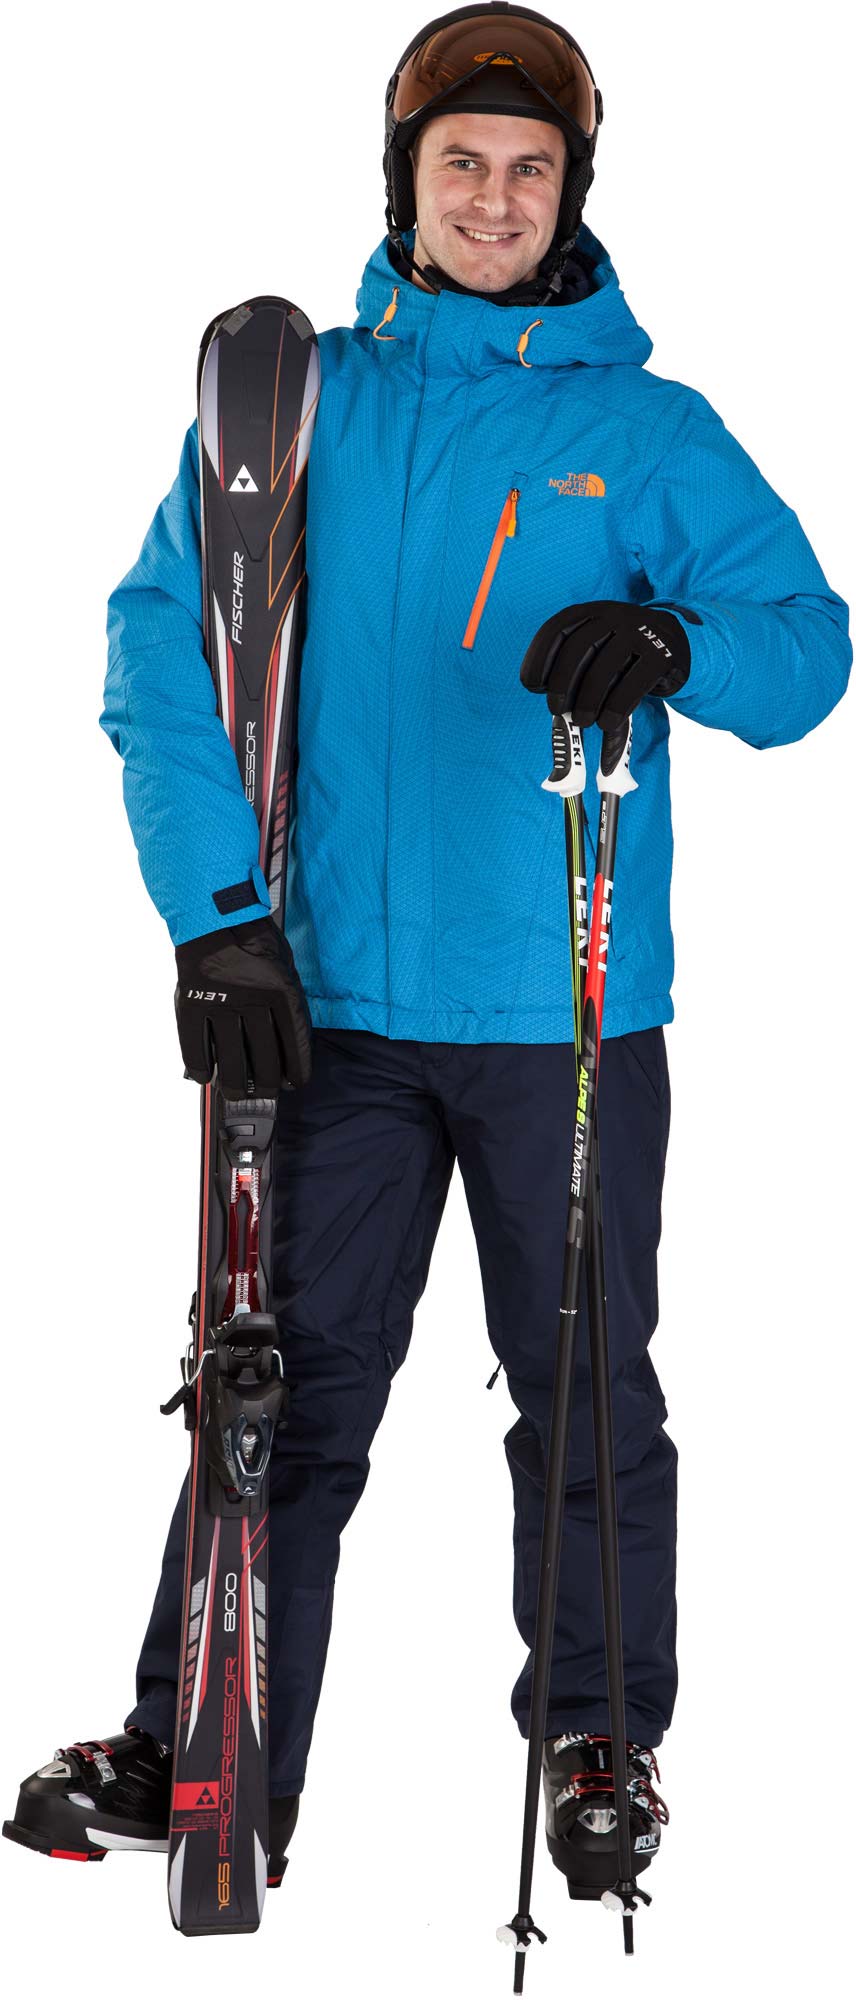 M DESCENDIT JACKET - Men's Ski Jacket